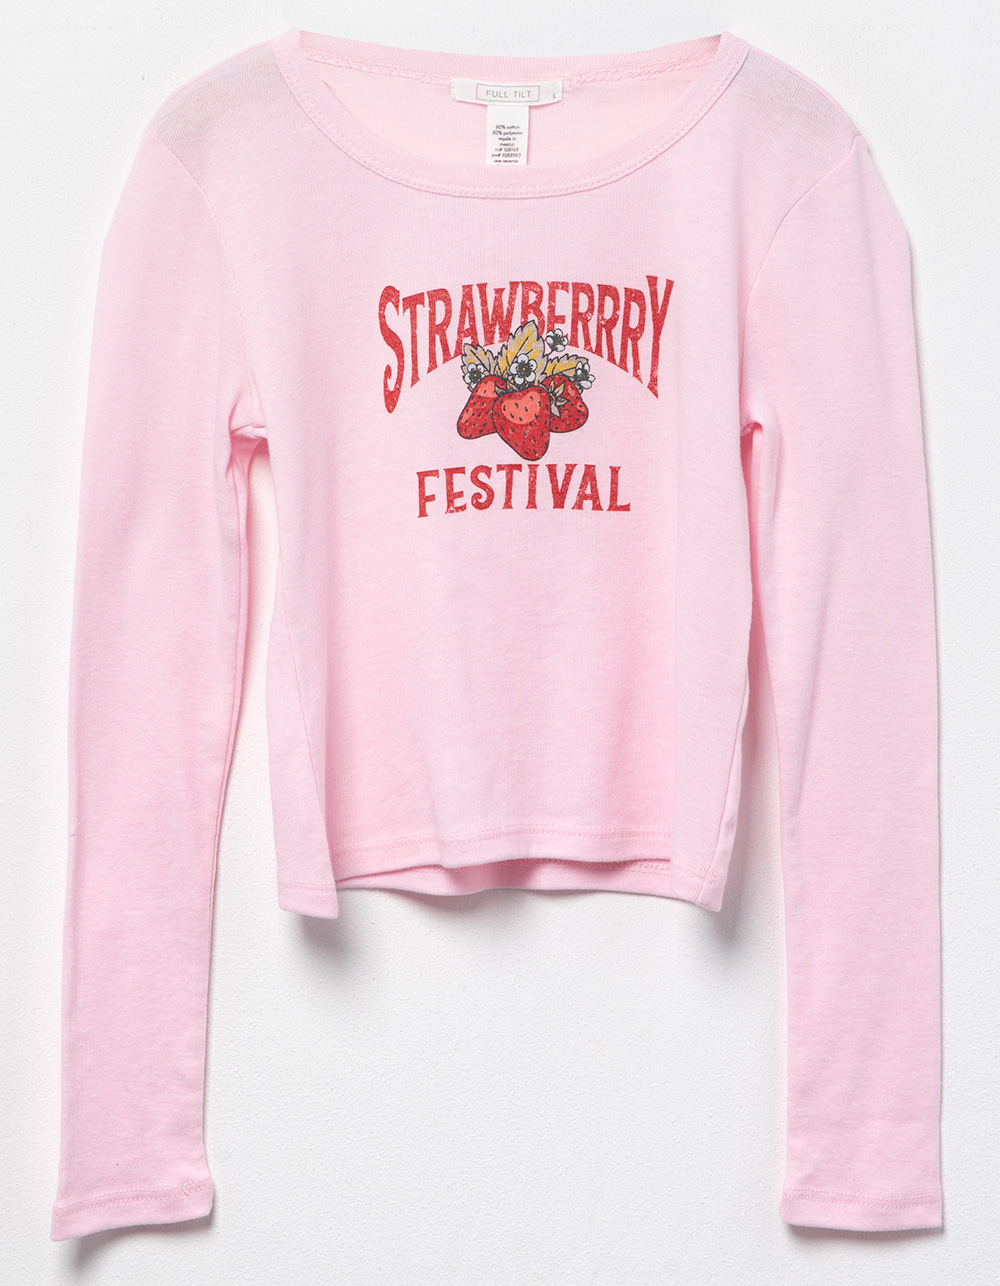 Festival Strawberry Baby | Girls PINK TILT Tillys - Tee FULL LIGHT Long Sleeve